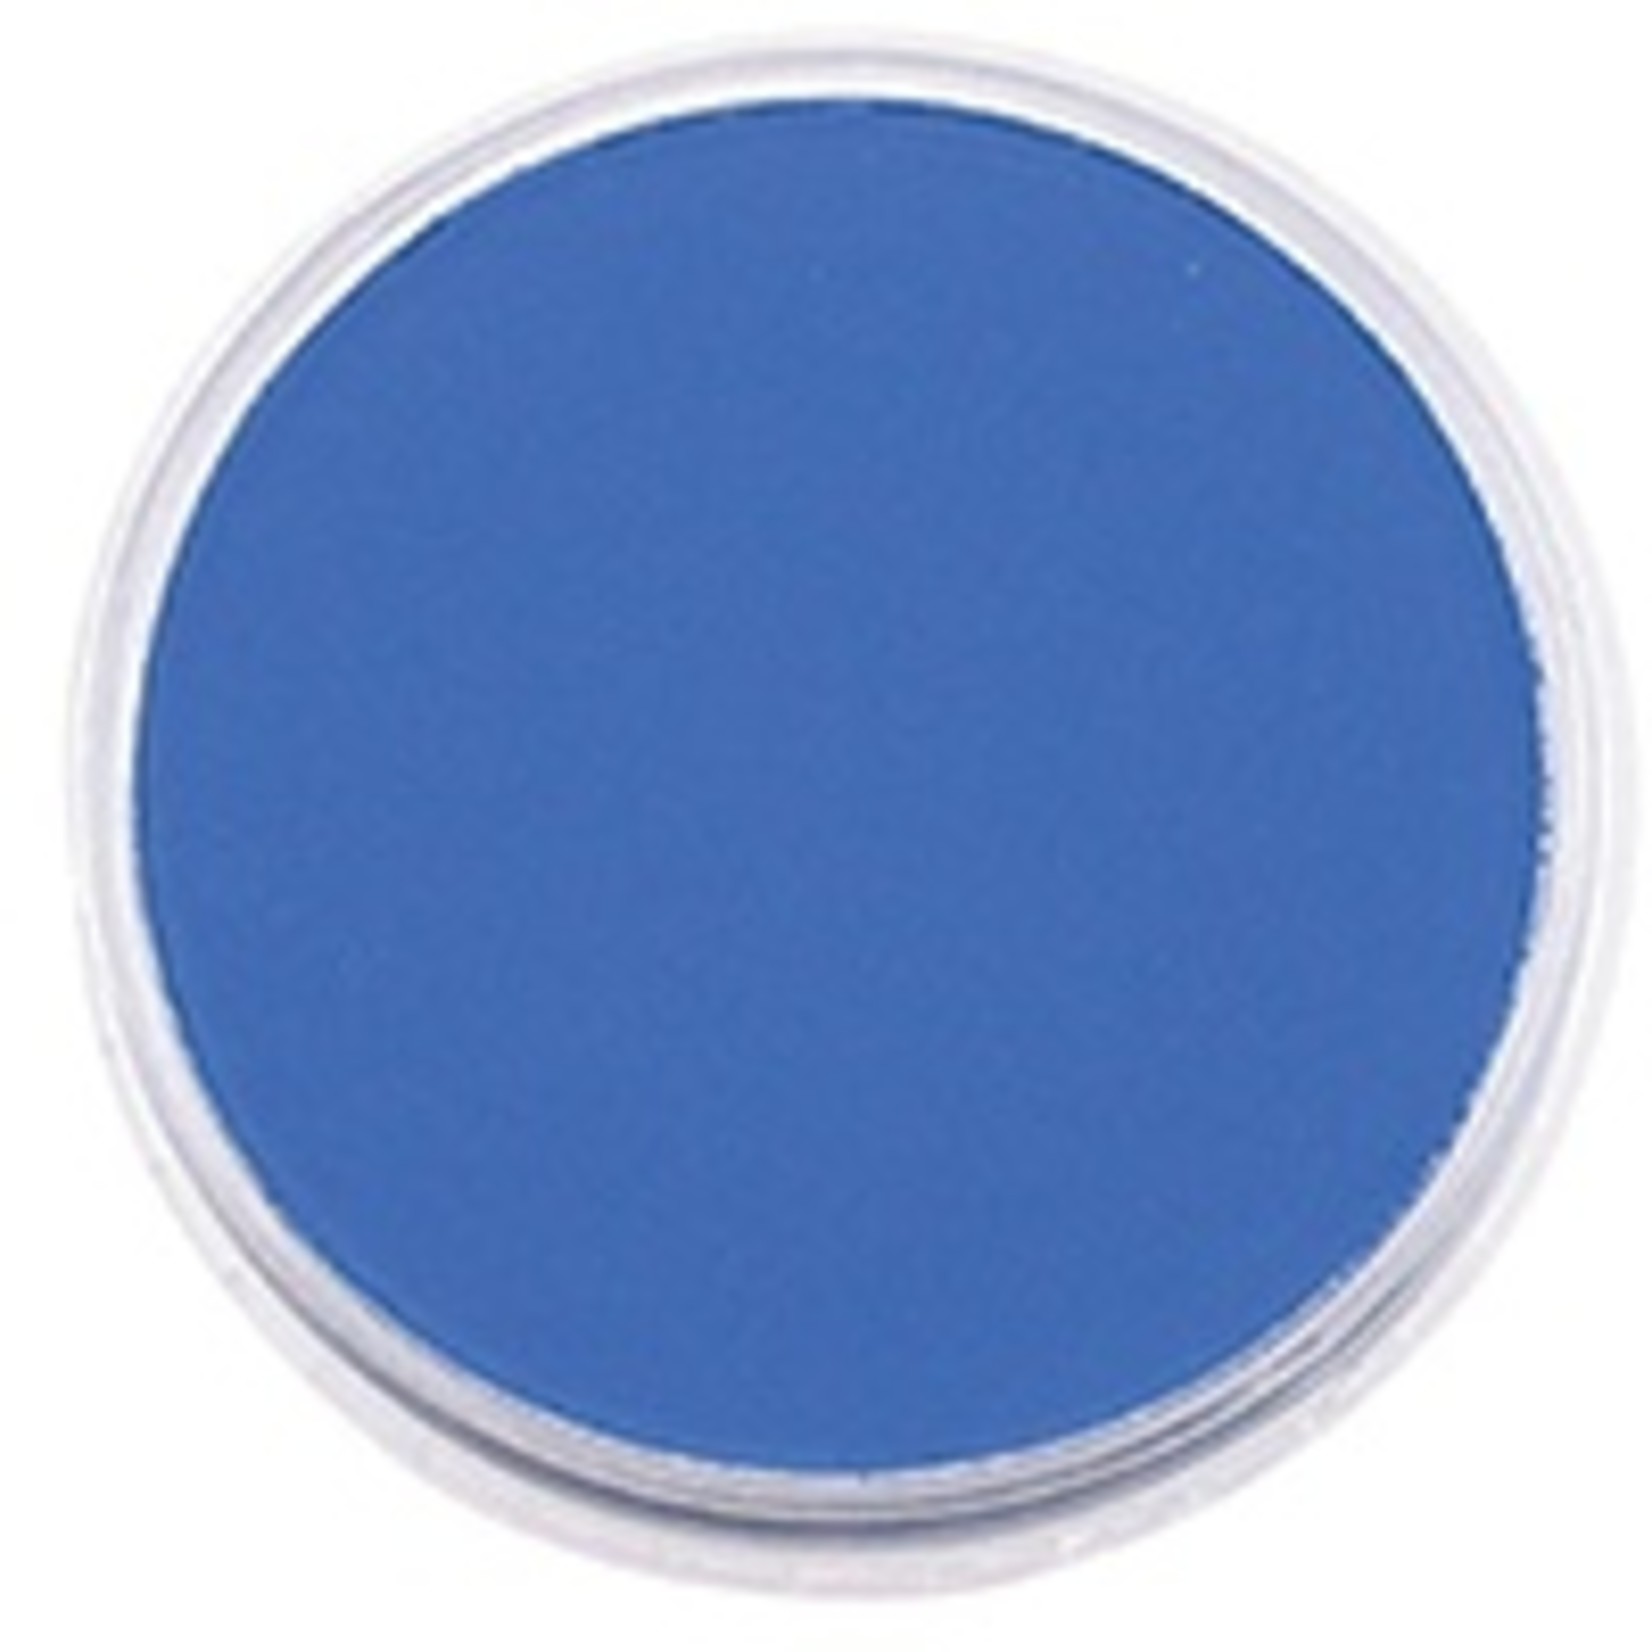 Pan Pastel PAN PASTEL ULTRAMARINE BLUE 520.5